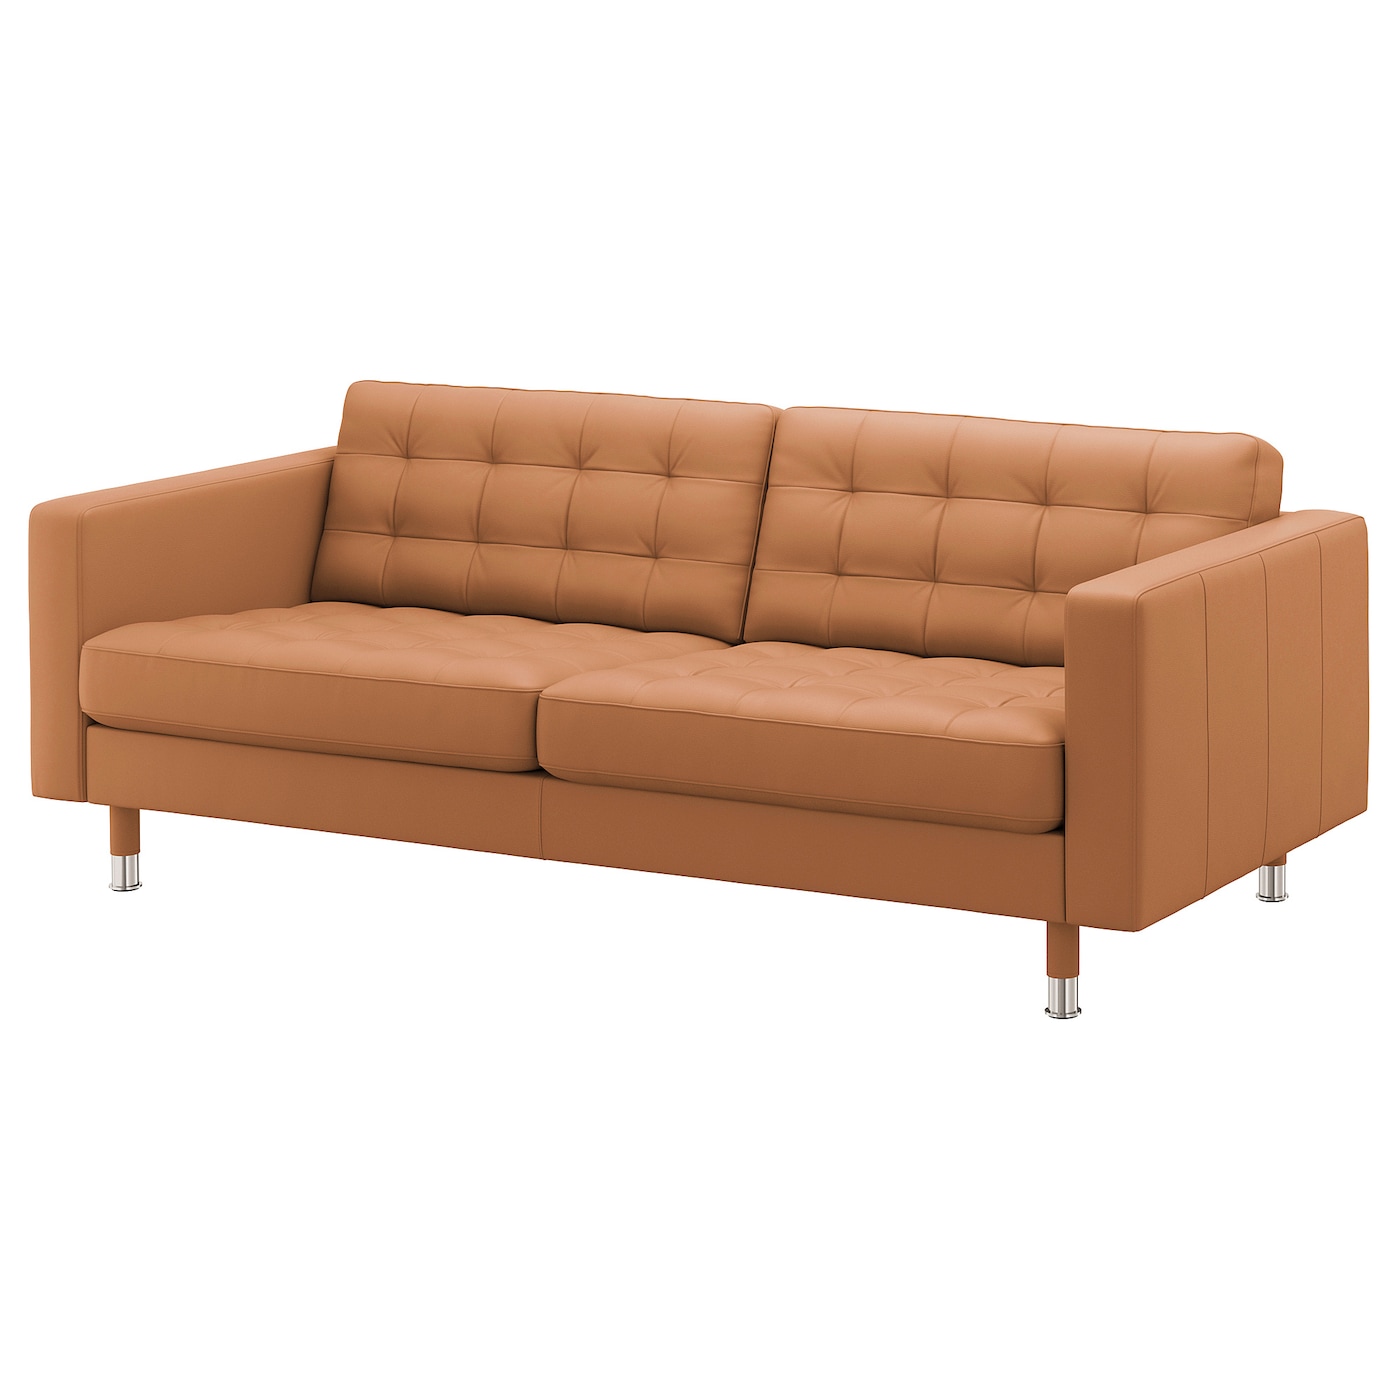 3-местный диван - IKEA LANDSKRONA, 204х89х78 см, оранжевый, кожа, ЛАНДСКРУНА ИКЕА